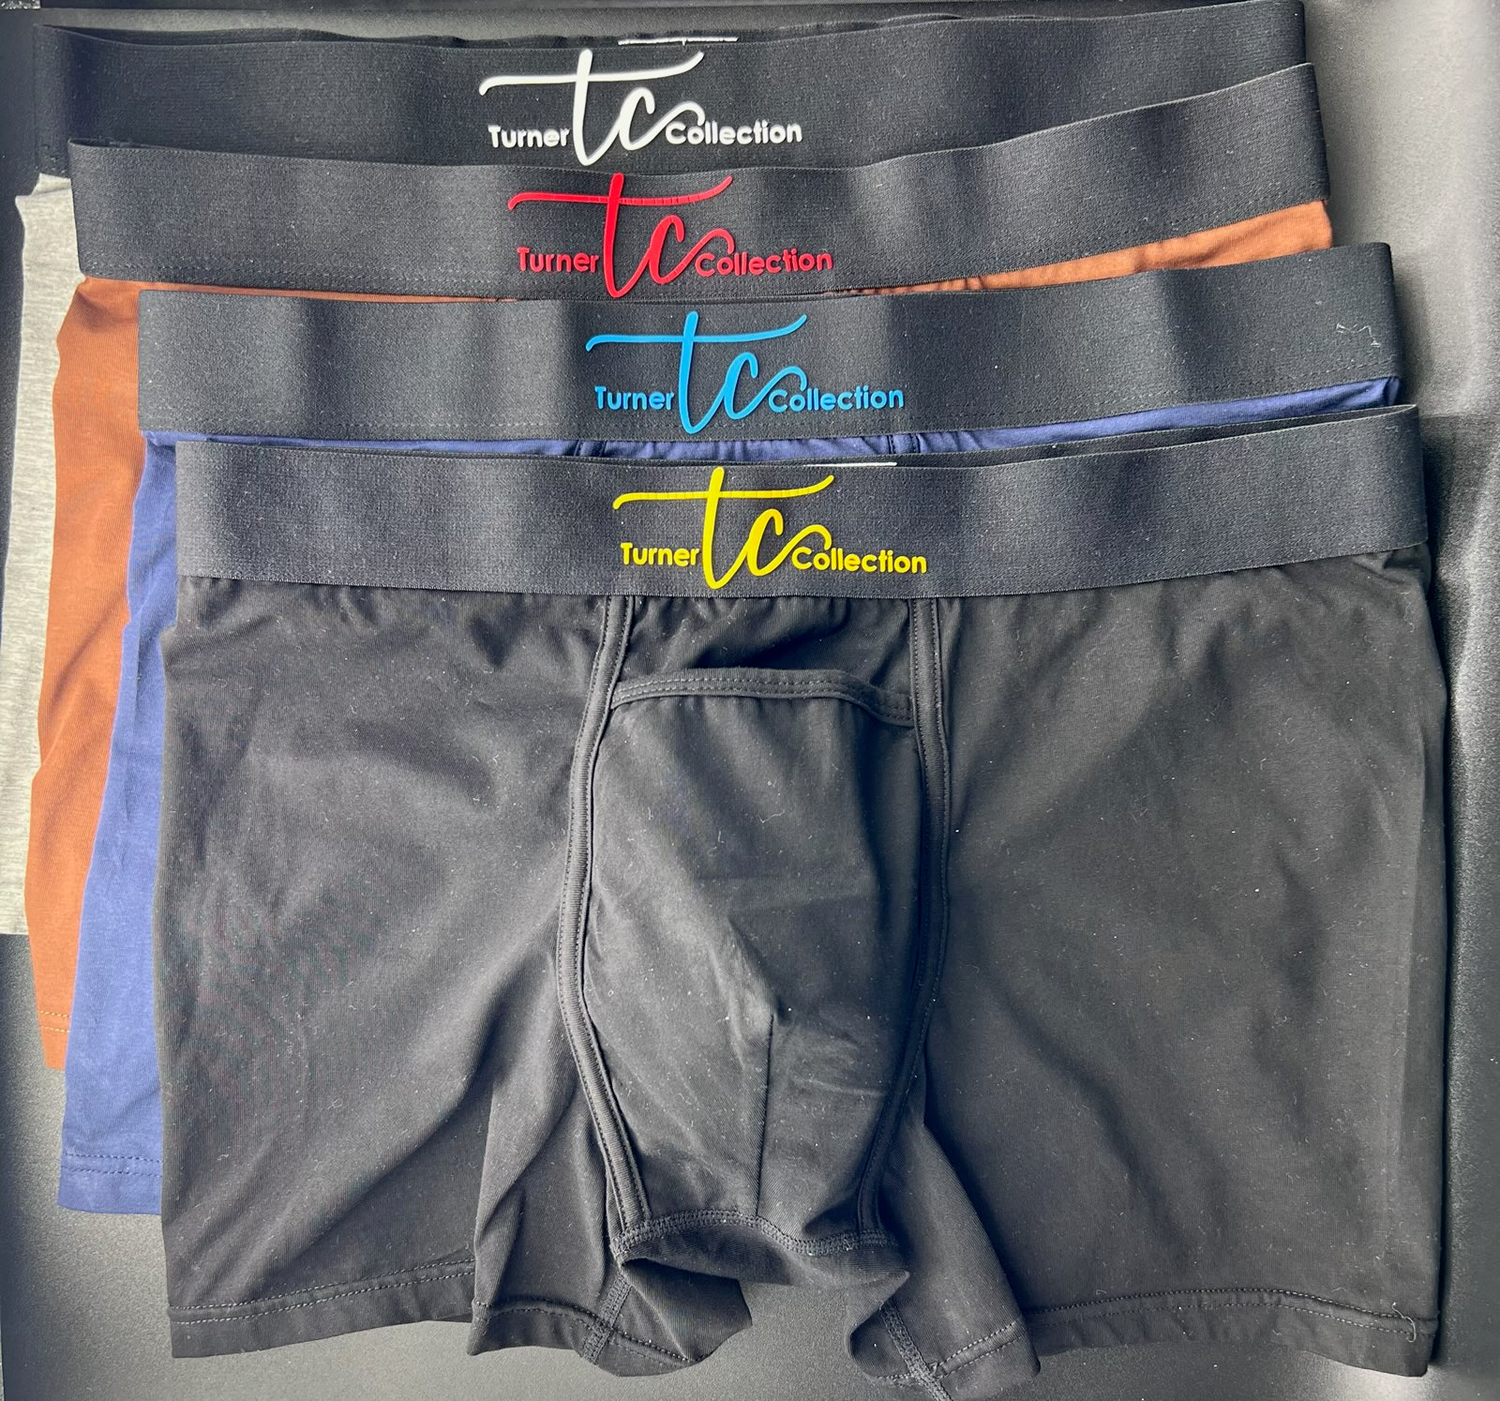 Turner Collection Underwear